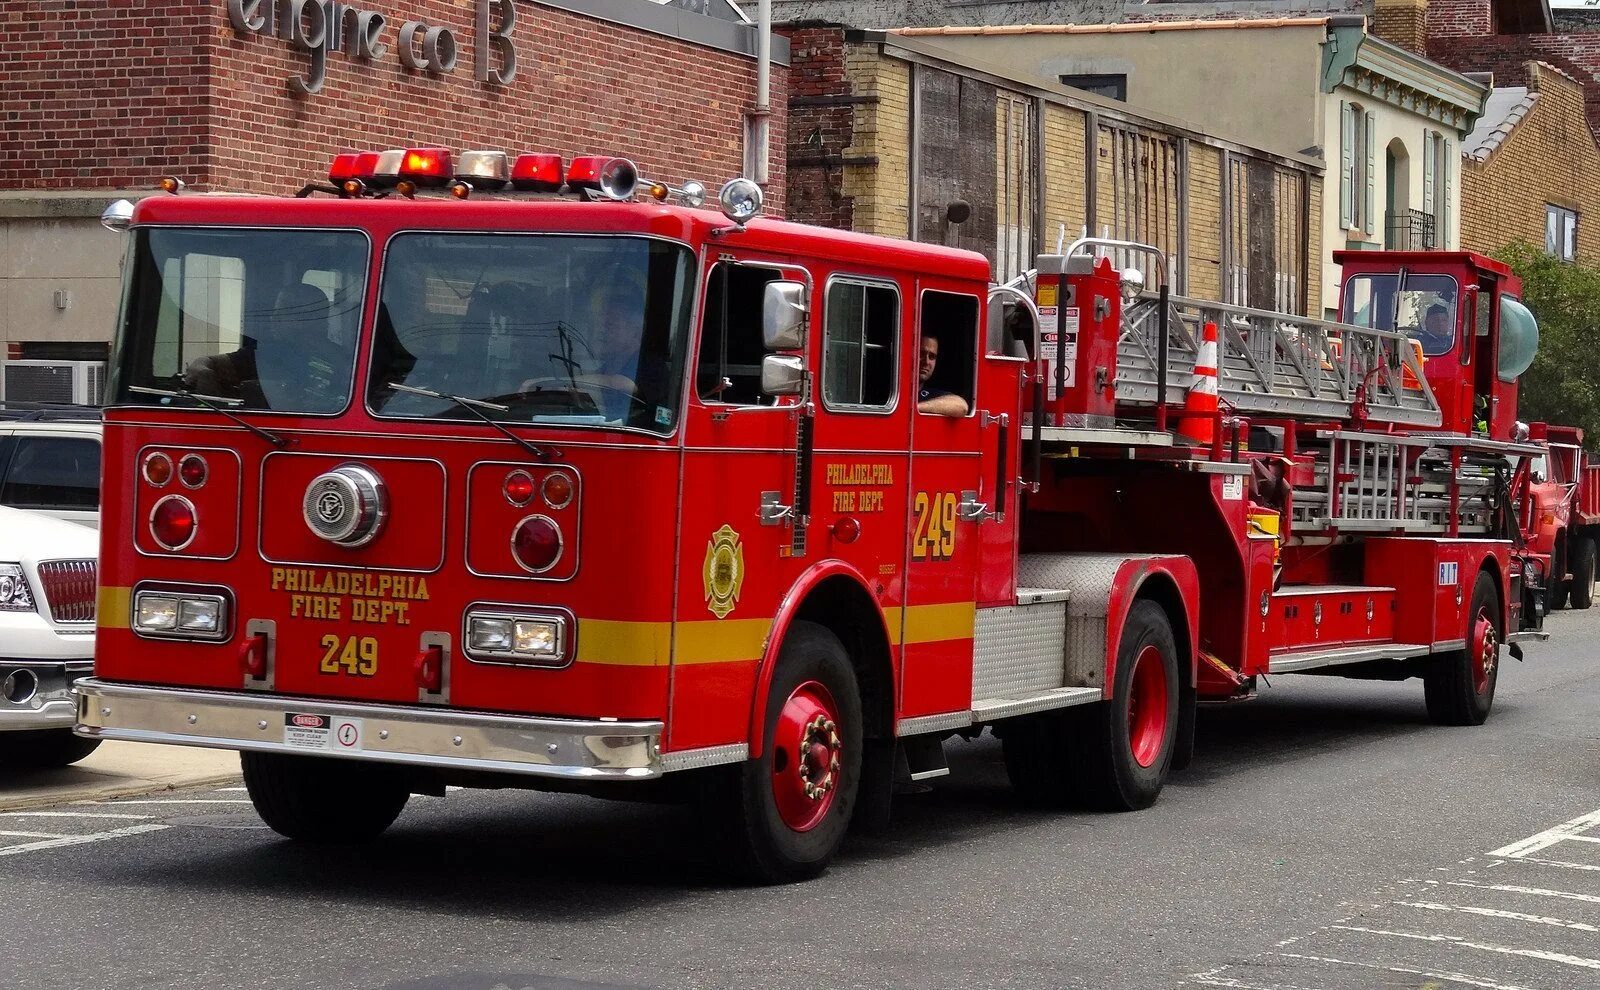 Специальный пожарно технический автомобиль. Машина "Fire Truck" пожарная, 49450. Пожарные машины Fire Ladder Truck. Seagrave Fire engine Ladder. Машина "Fire Truck" пожарная, 49450 салон.